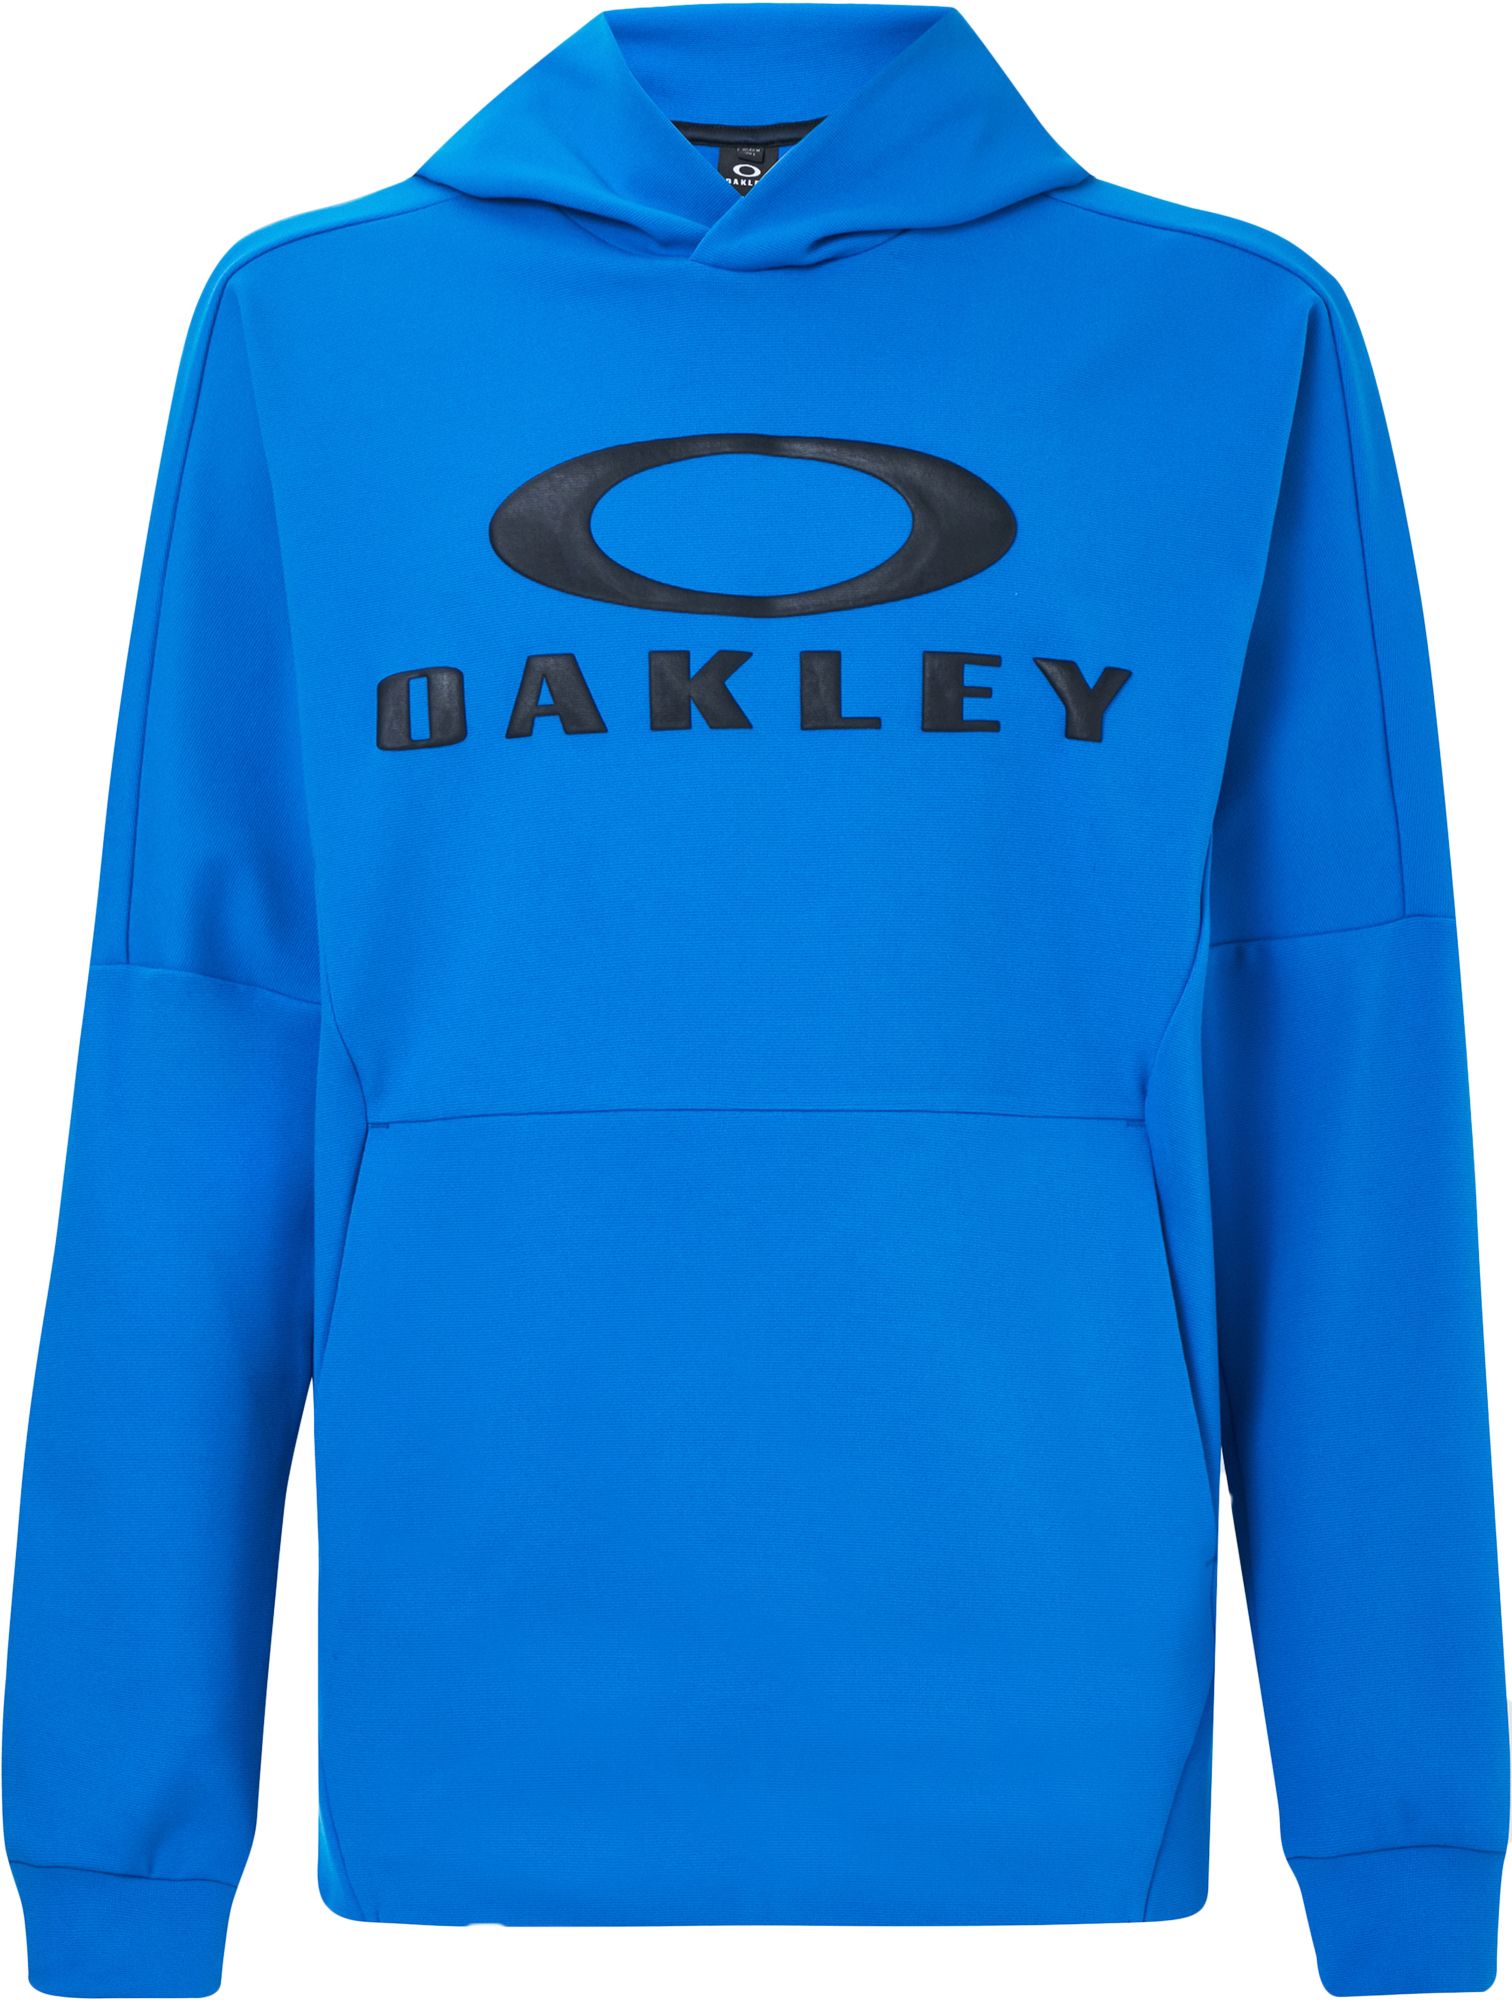 oakley hoodies clearance